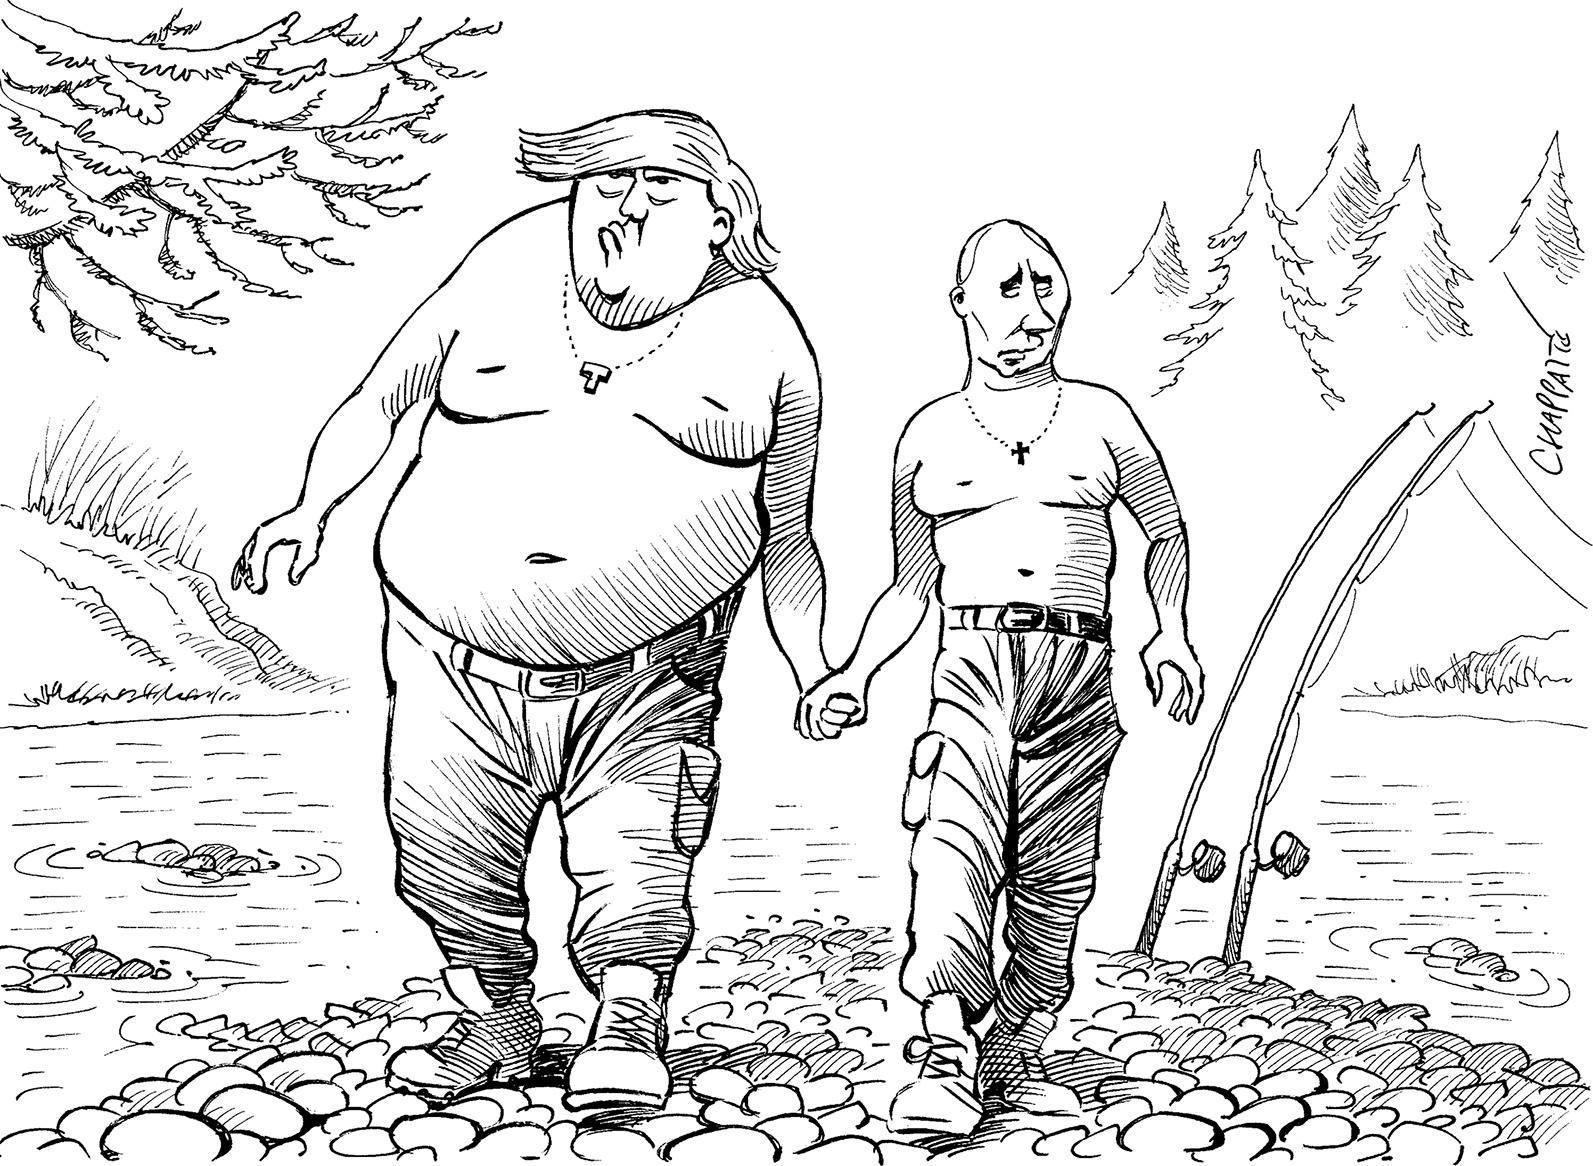 Putin and Trump (black/white)